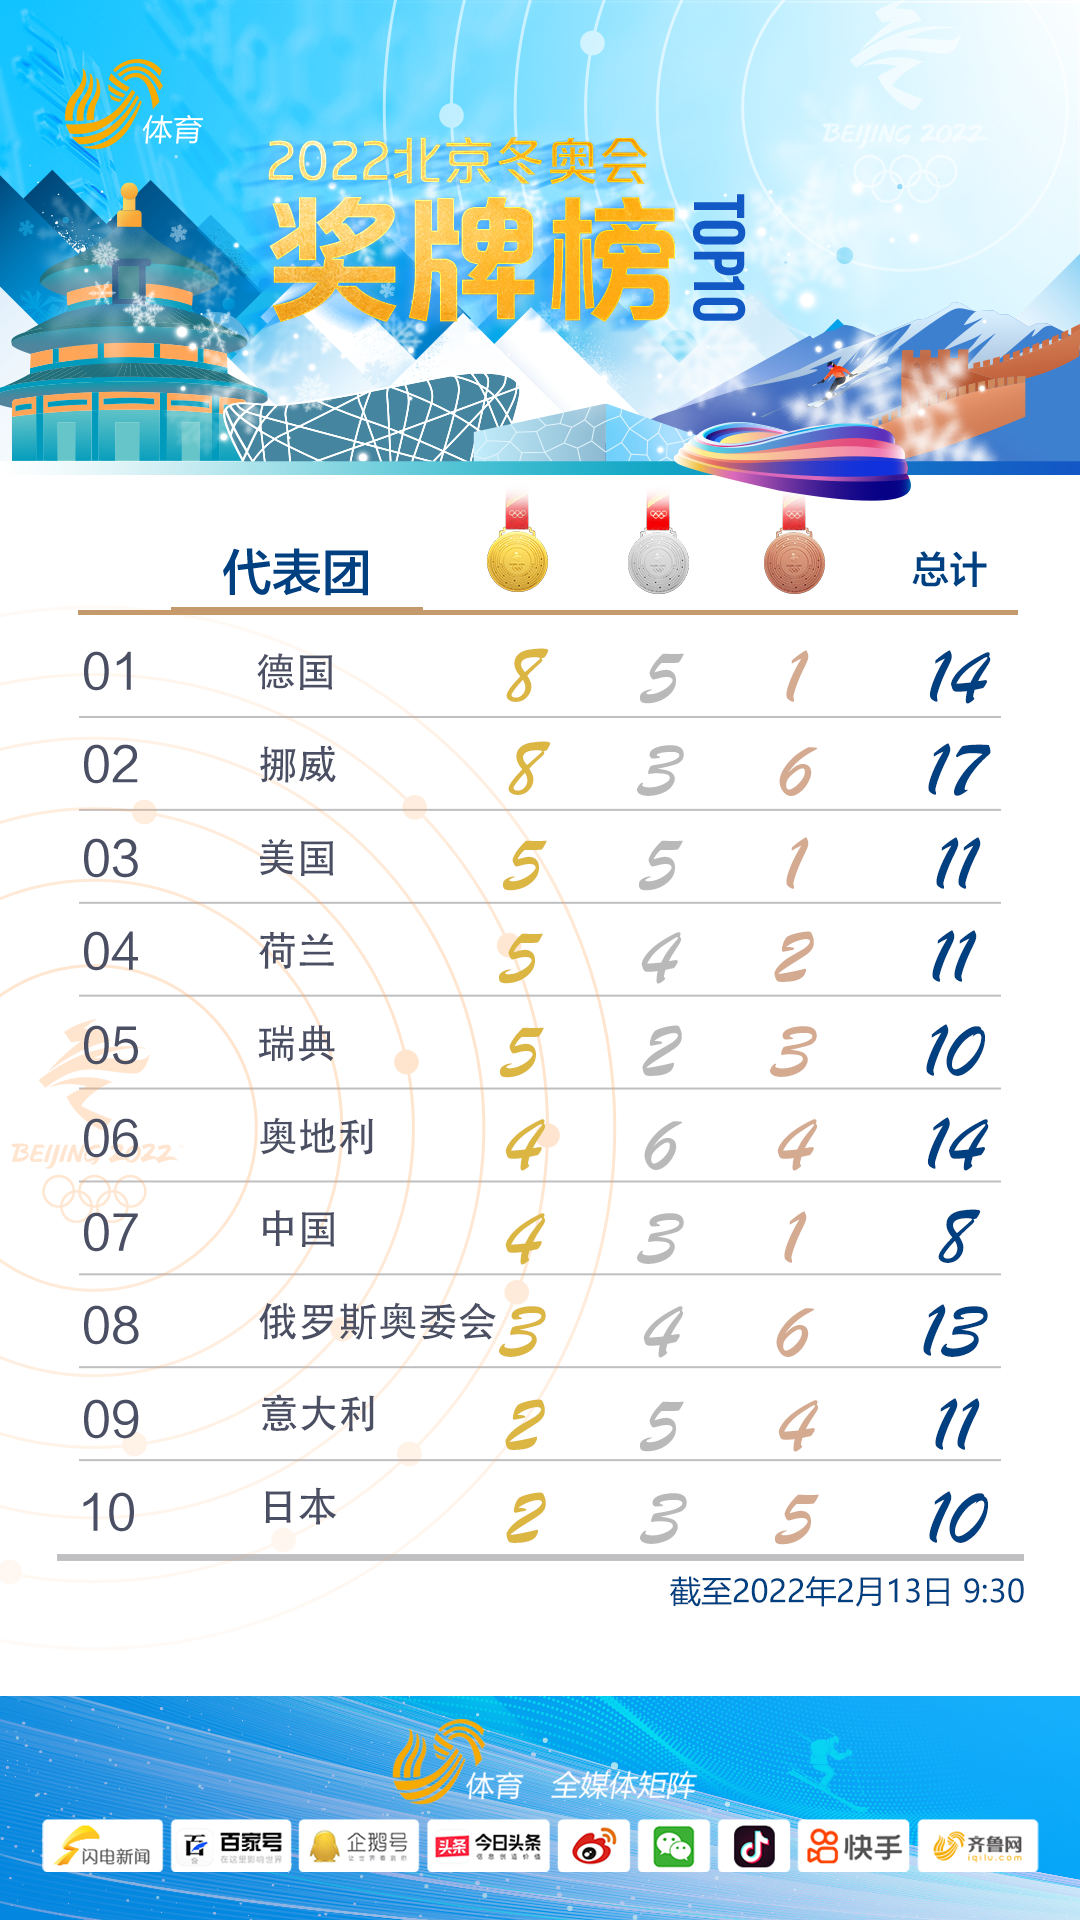 北京冬奥会奖牌榜中国4金3银1铜暂列第七